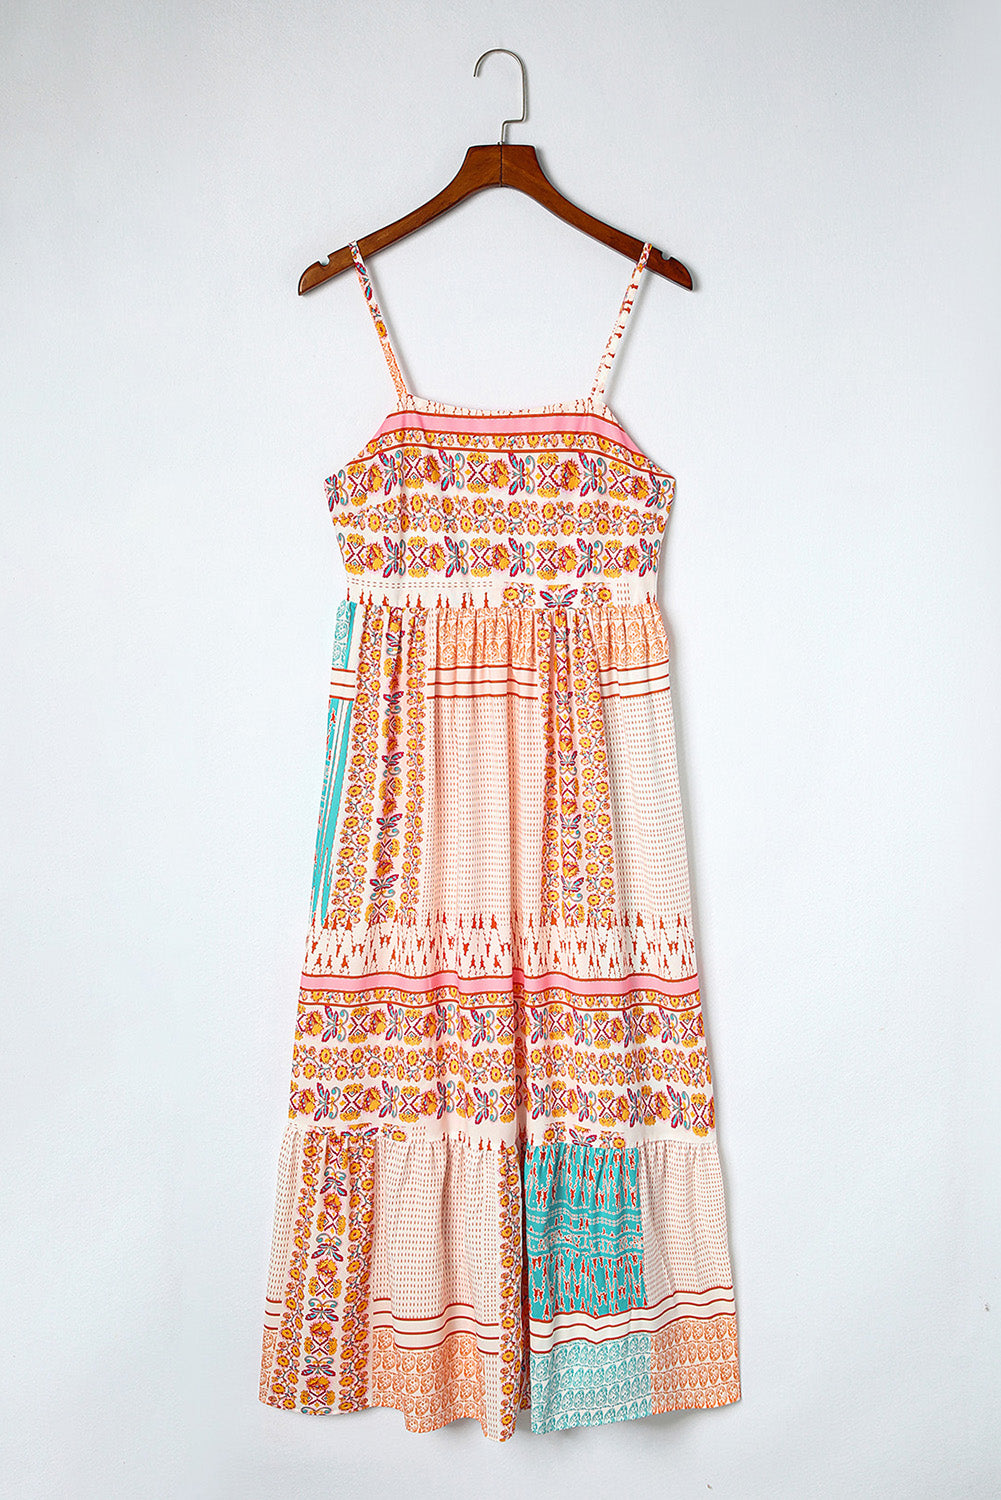 Mehrfarbiges Sommerkleid mit eckigem Ausschnitt im Boho-Patchwork-Print